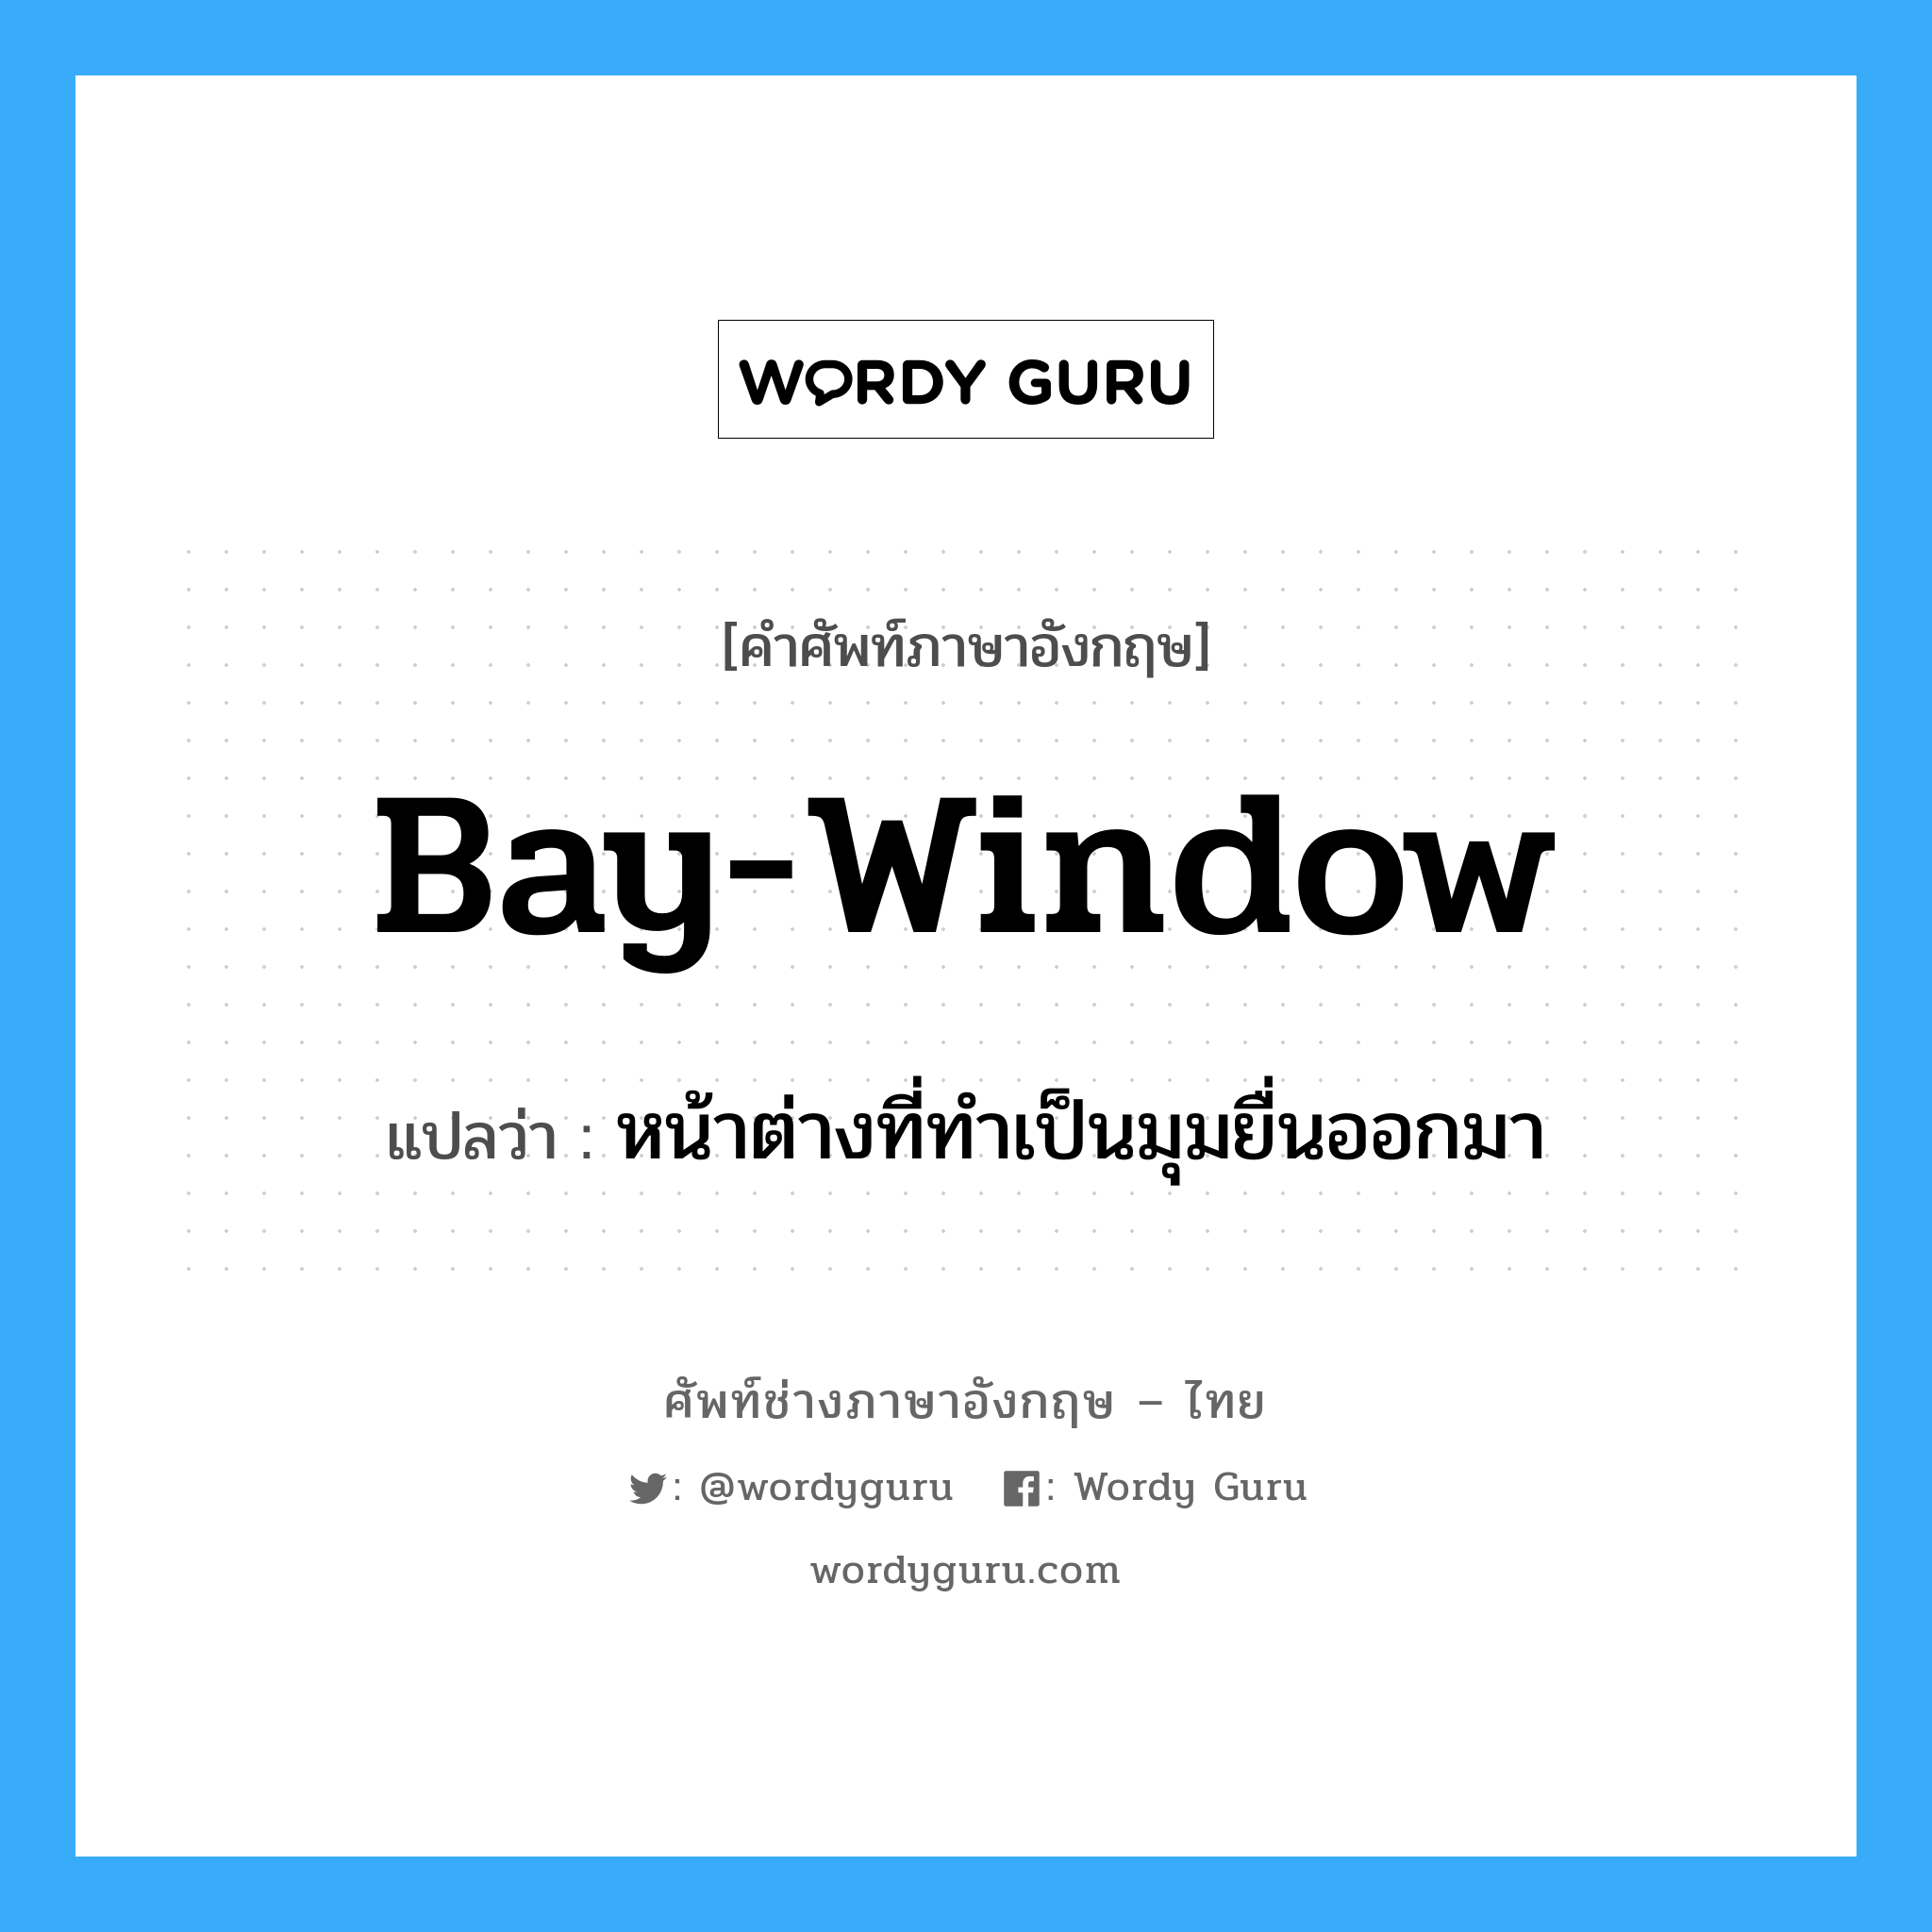 หน้าต่างที่ทำเป็นมุมยื่นออกมา ภาษาอังกฤษ?, คำศัพท์ช่างภาษาอังกฤษ - ไทย หน้าต่างที่ทำเป็นมุมยื่นออกมา คำศัพท์ภาษาอังกฤษ หน้าต่างที่ทำเป็นมุมยื่นออกมา แปลว่า bay-window